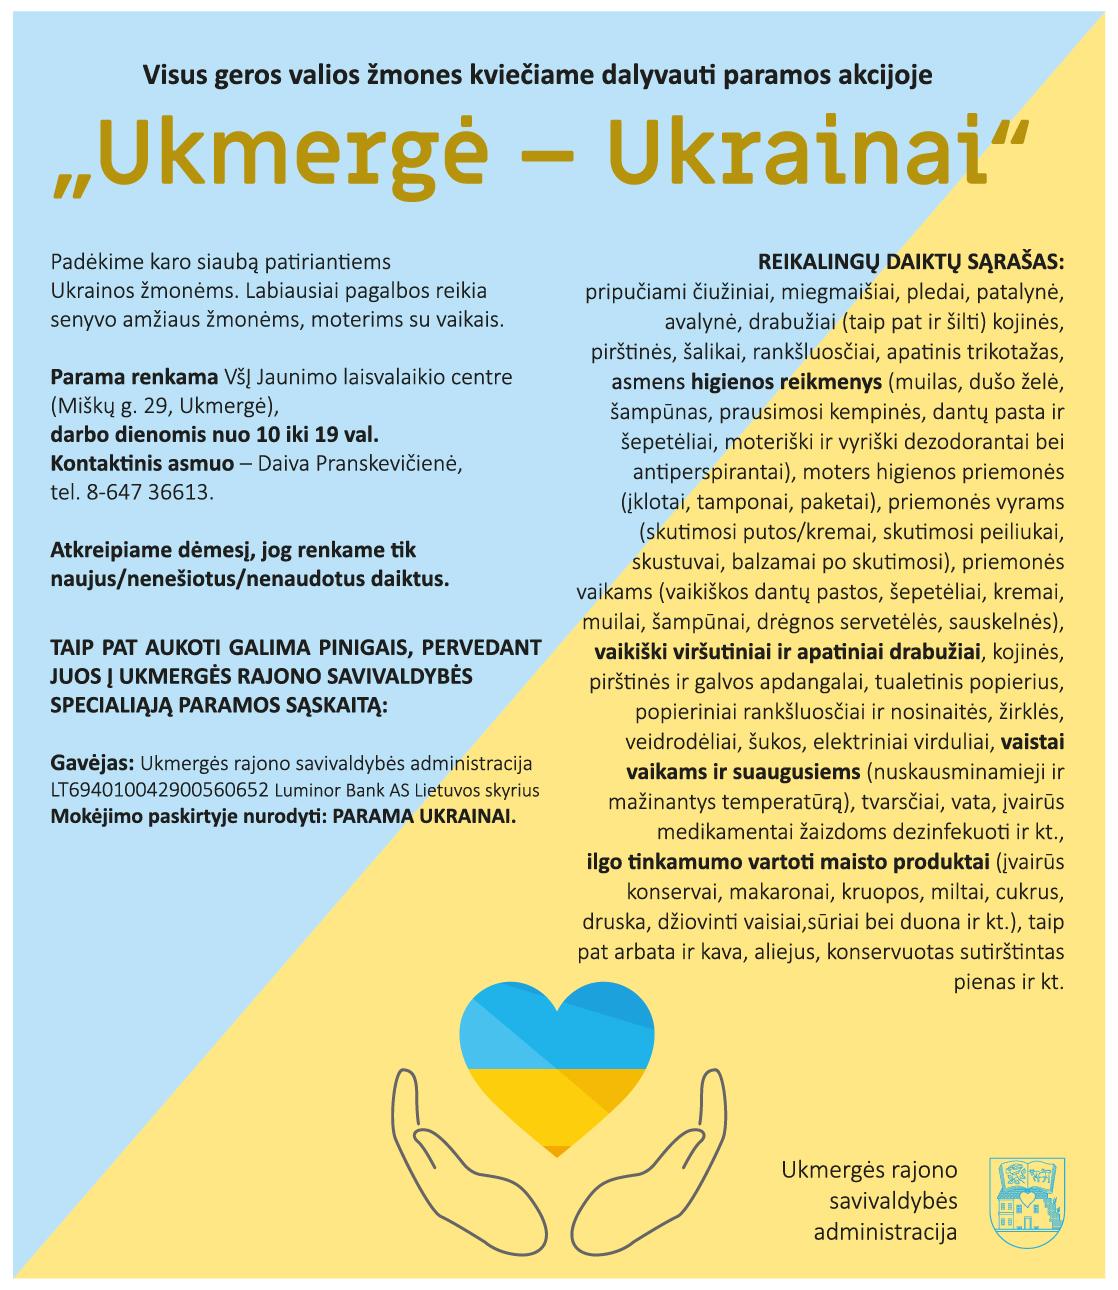 Visus geros valios žmones kviečia dalyvauti paramos akcijoje „Ukmergė – Ukrainai“. /